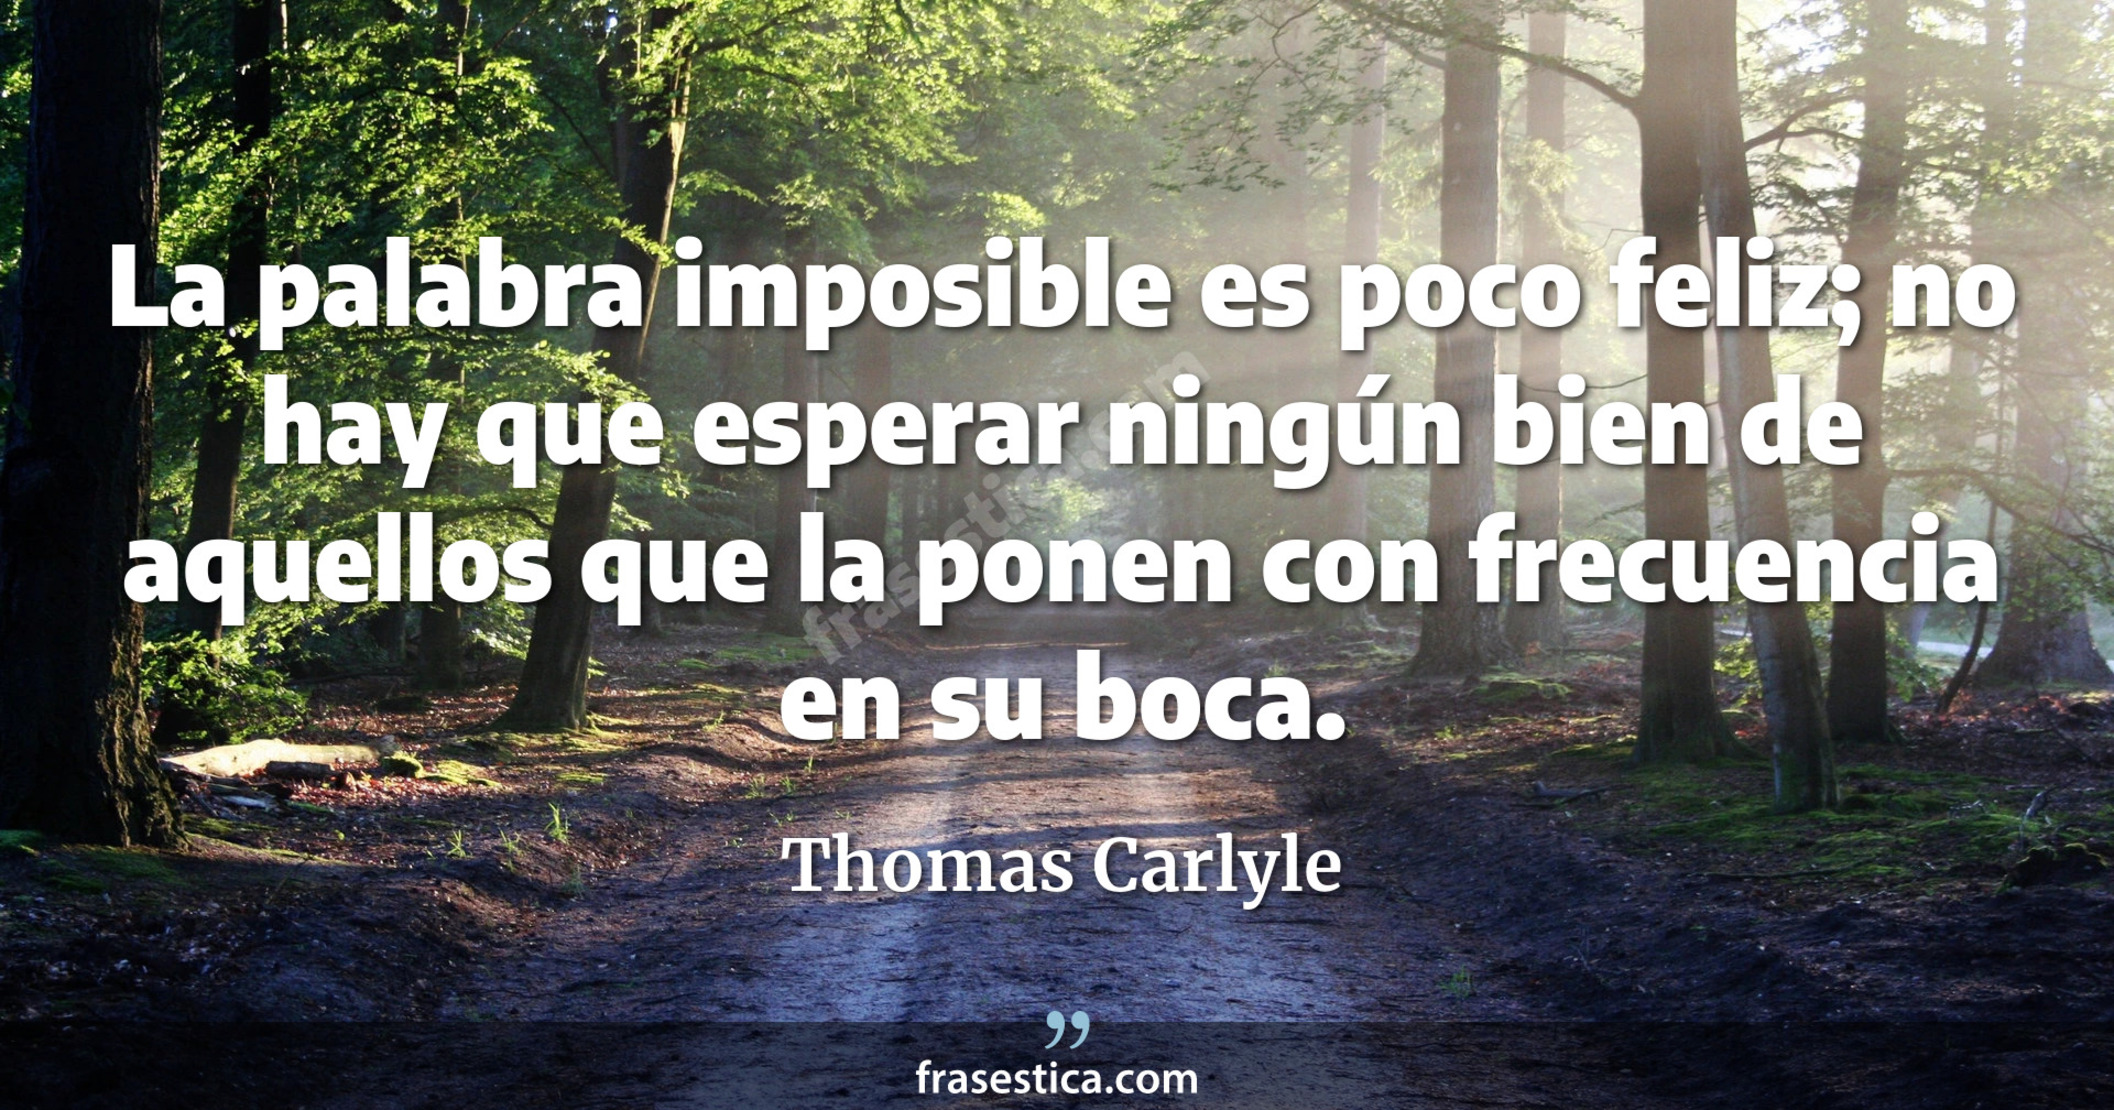 La palabra imposible es poco feliz; no hay que esperar ningún bien de aquellos que la ponen con frecuencia en su boca. - Thomas Carlyle